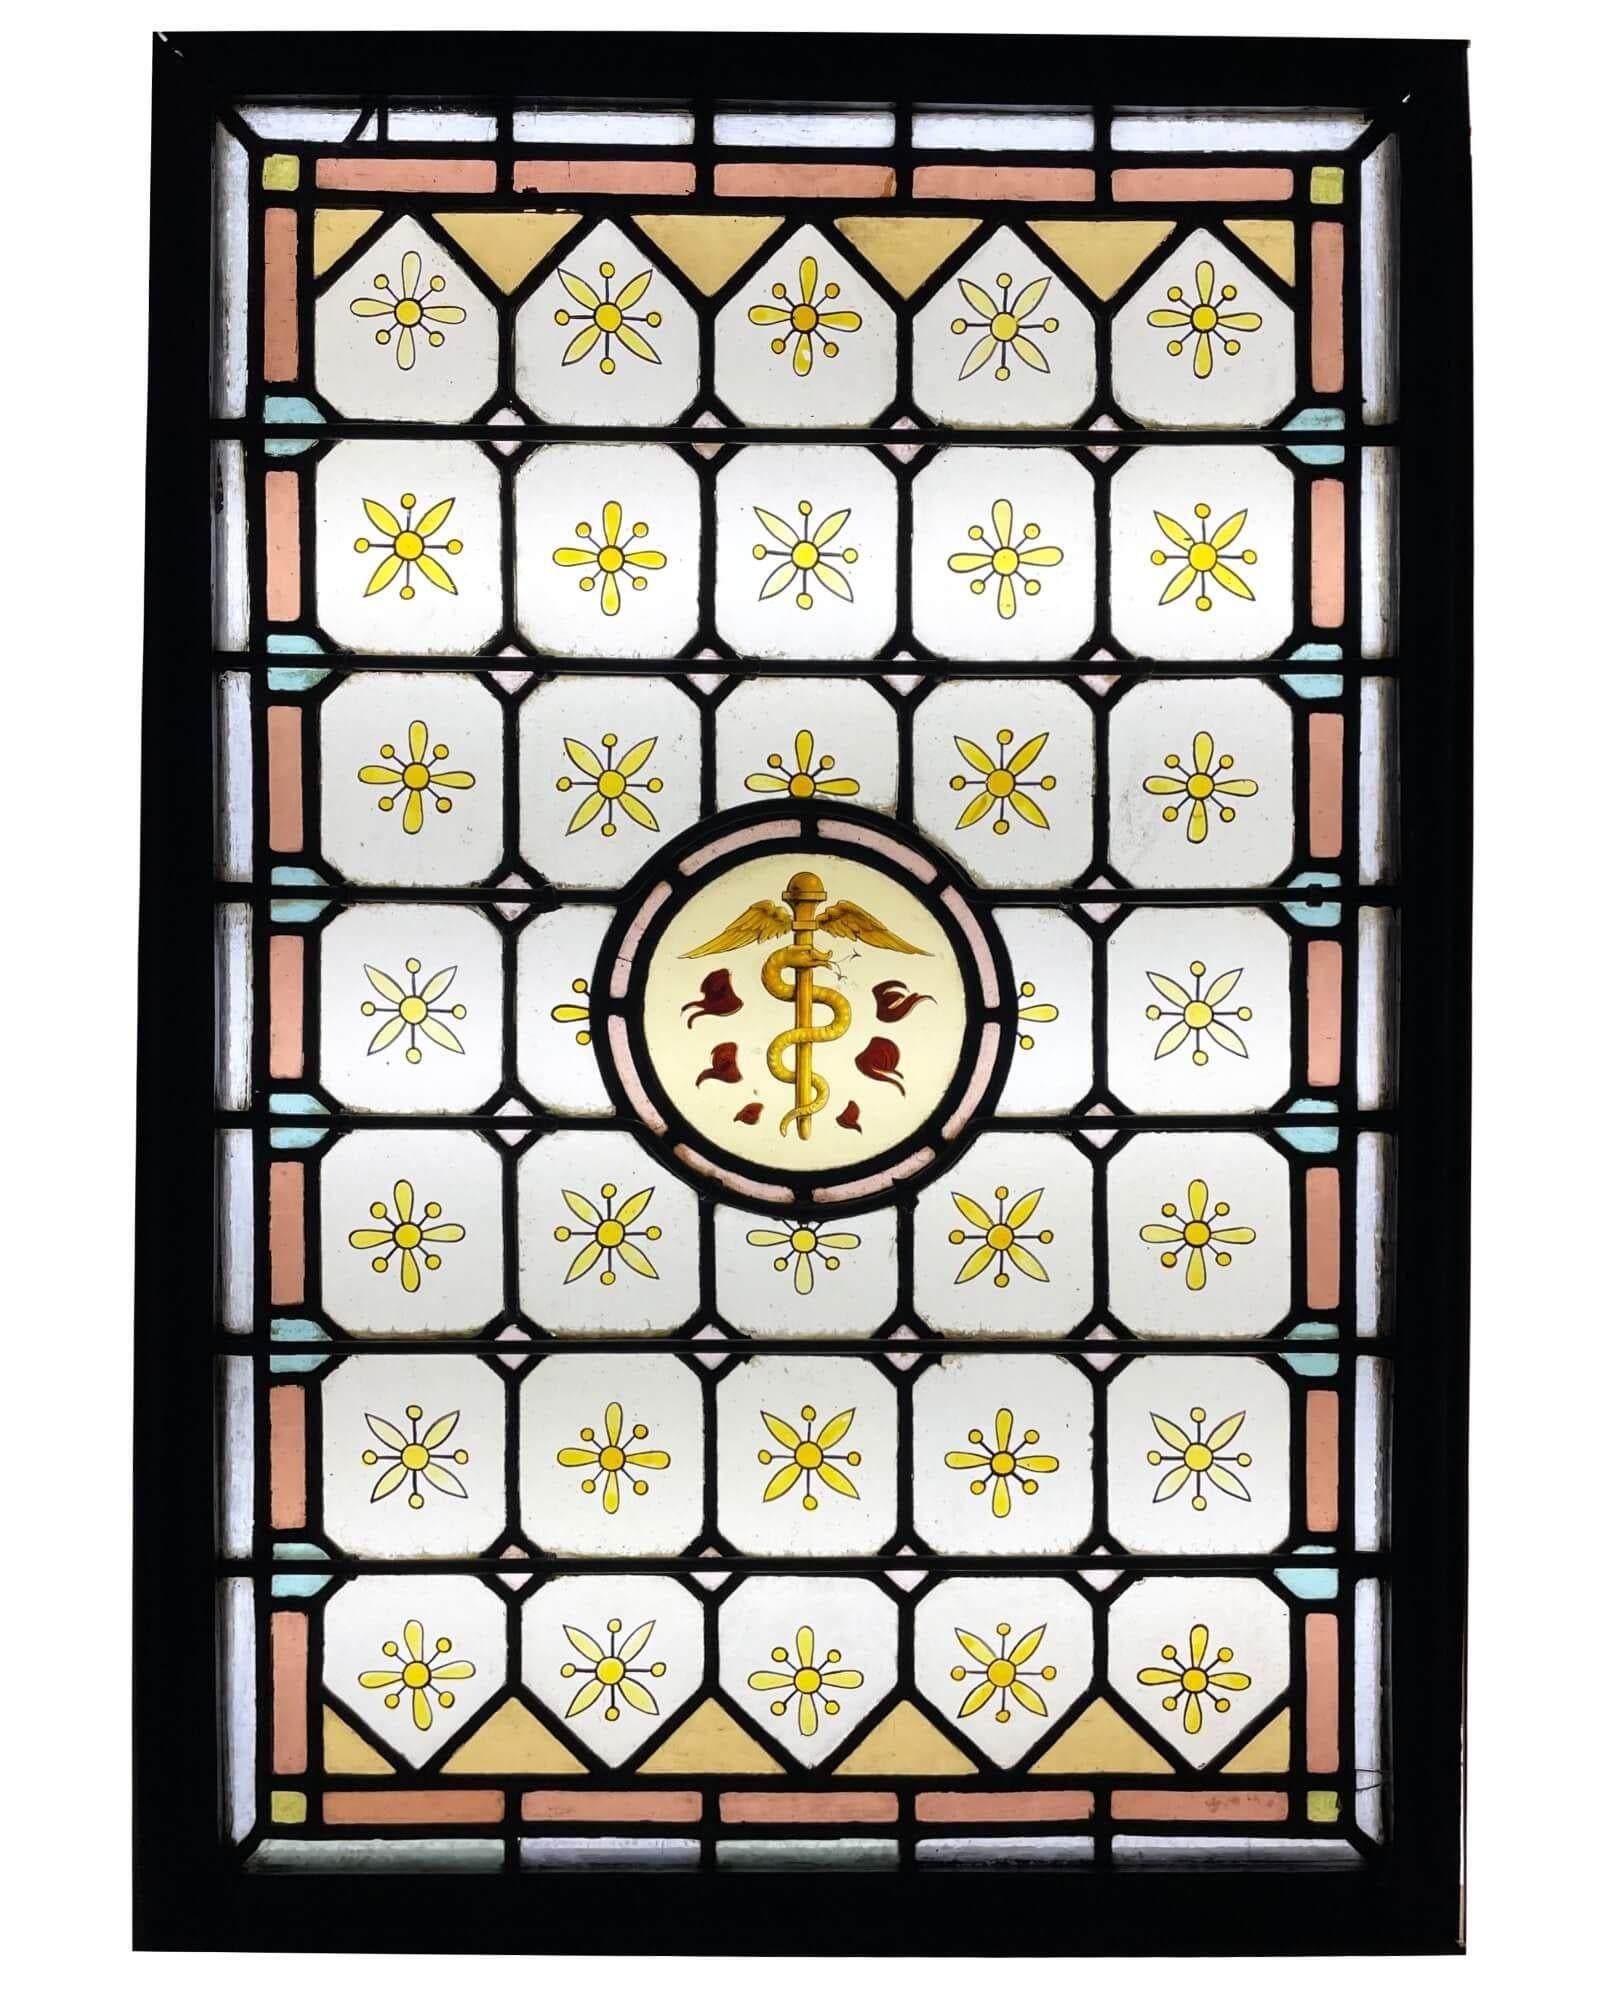 Ein antikes Glasfenster aus dem späten 19. Jahrhundert mit der Darstellung des griechischen Äskulapstabs, dem Symbol der Gesundheit und der wissenschaftlichen Medizin. Es stellt eine Schlange dar, die sich um einen Stab mit Engelsflügeln an der